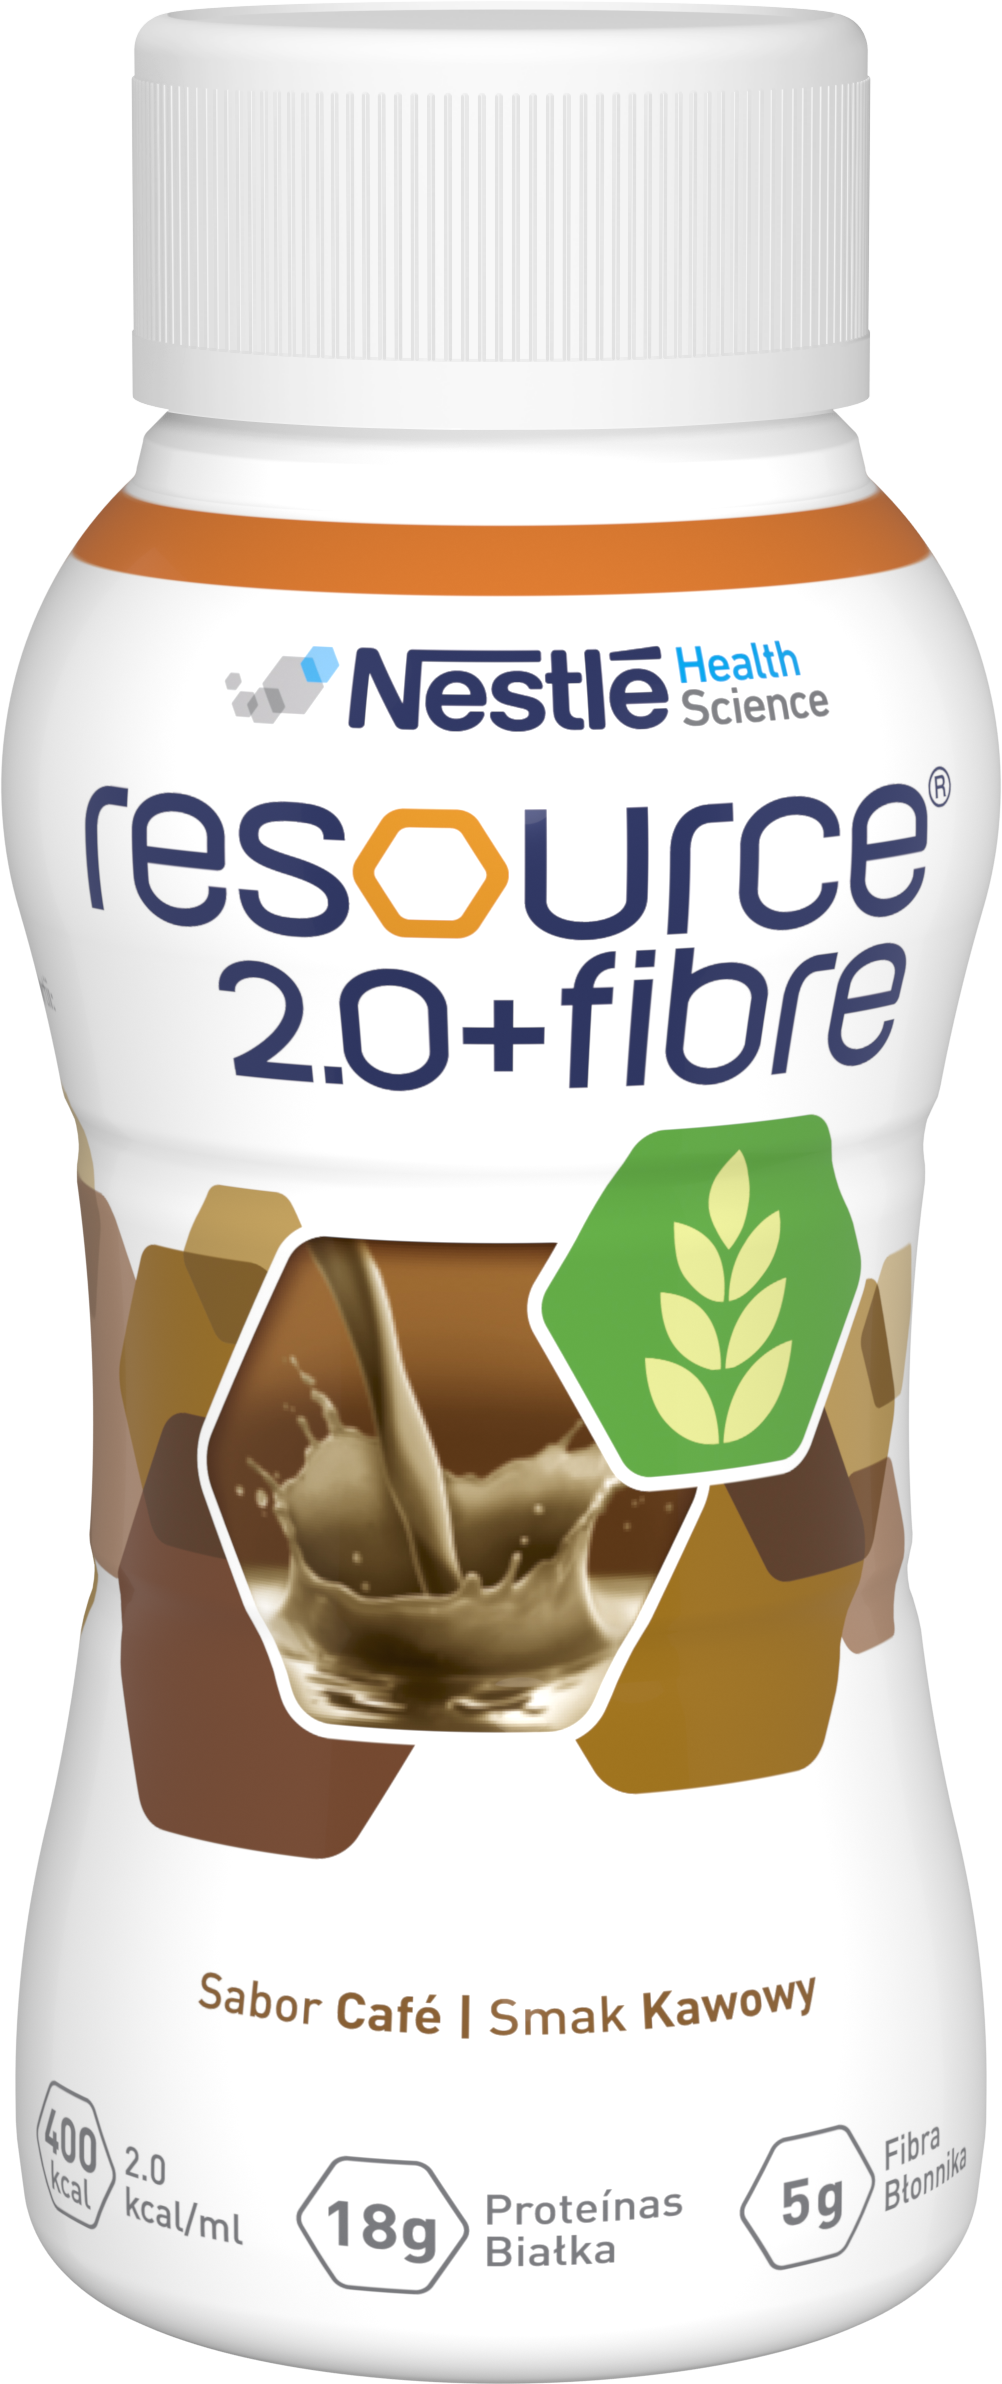 Resource 2.0+ Fibre smak kawowy